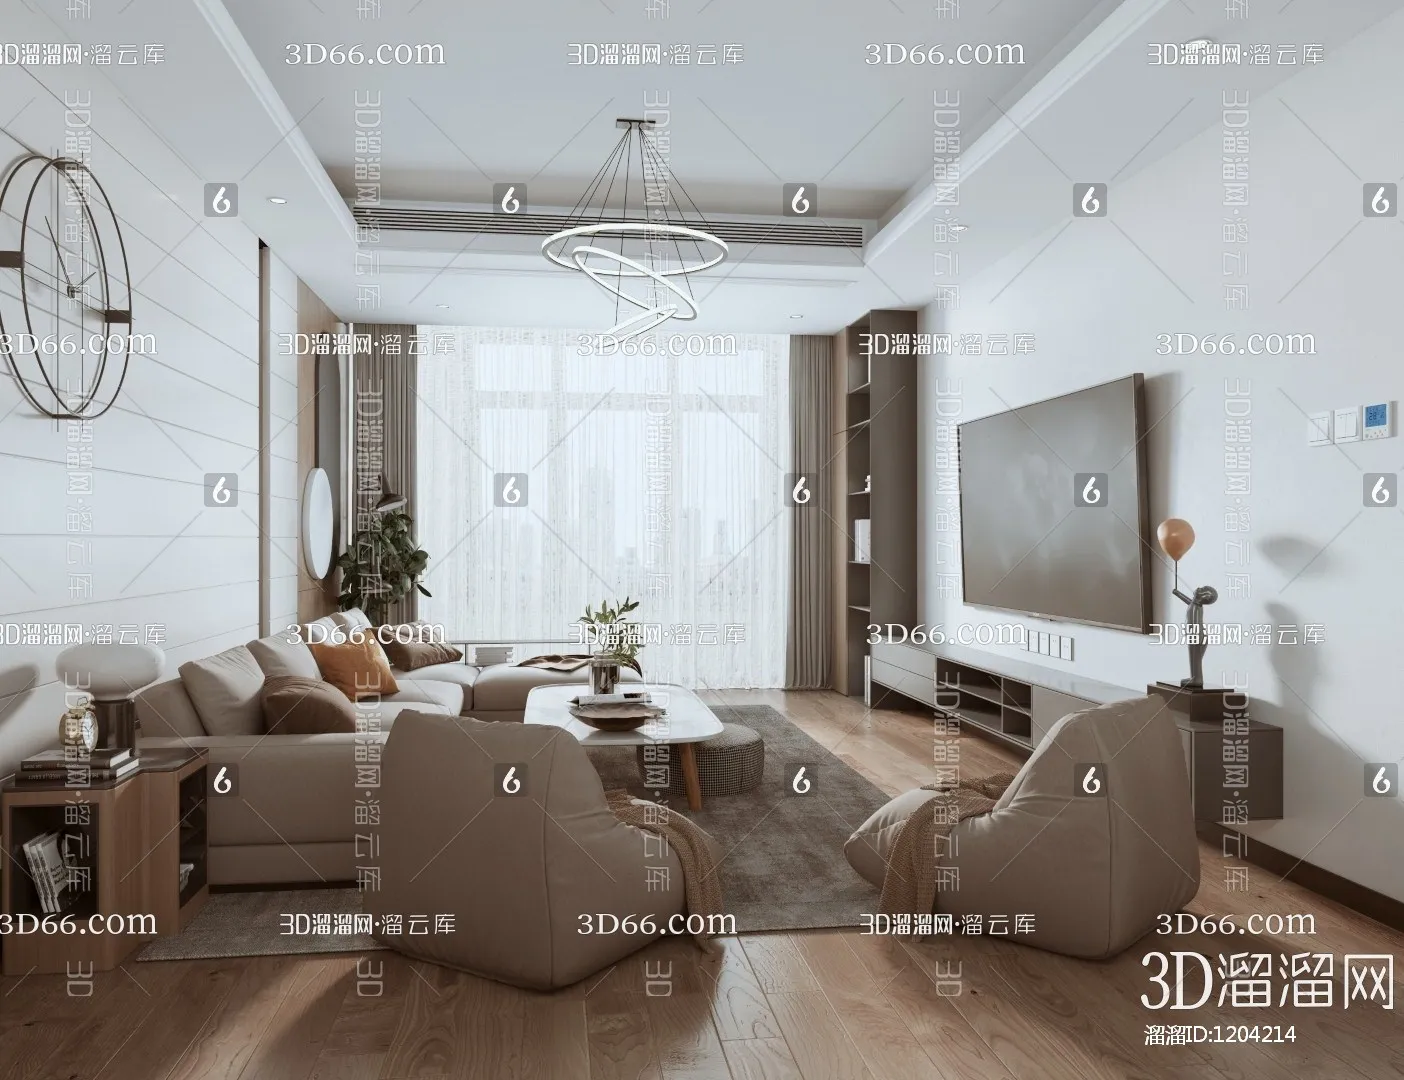 Apartment 3D Scenes – 0002